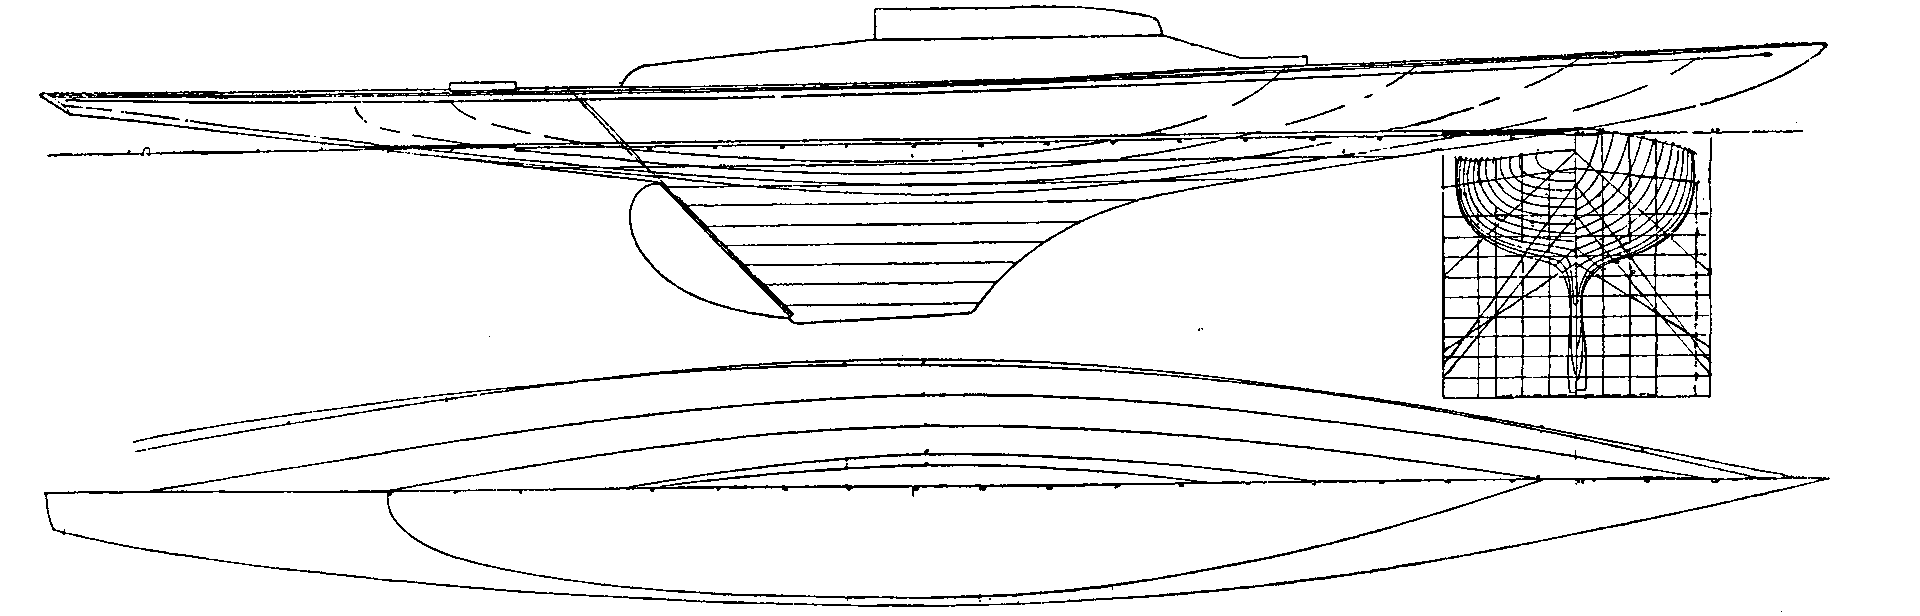 Haleni-Linien-und-Spantenriss-1924